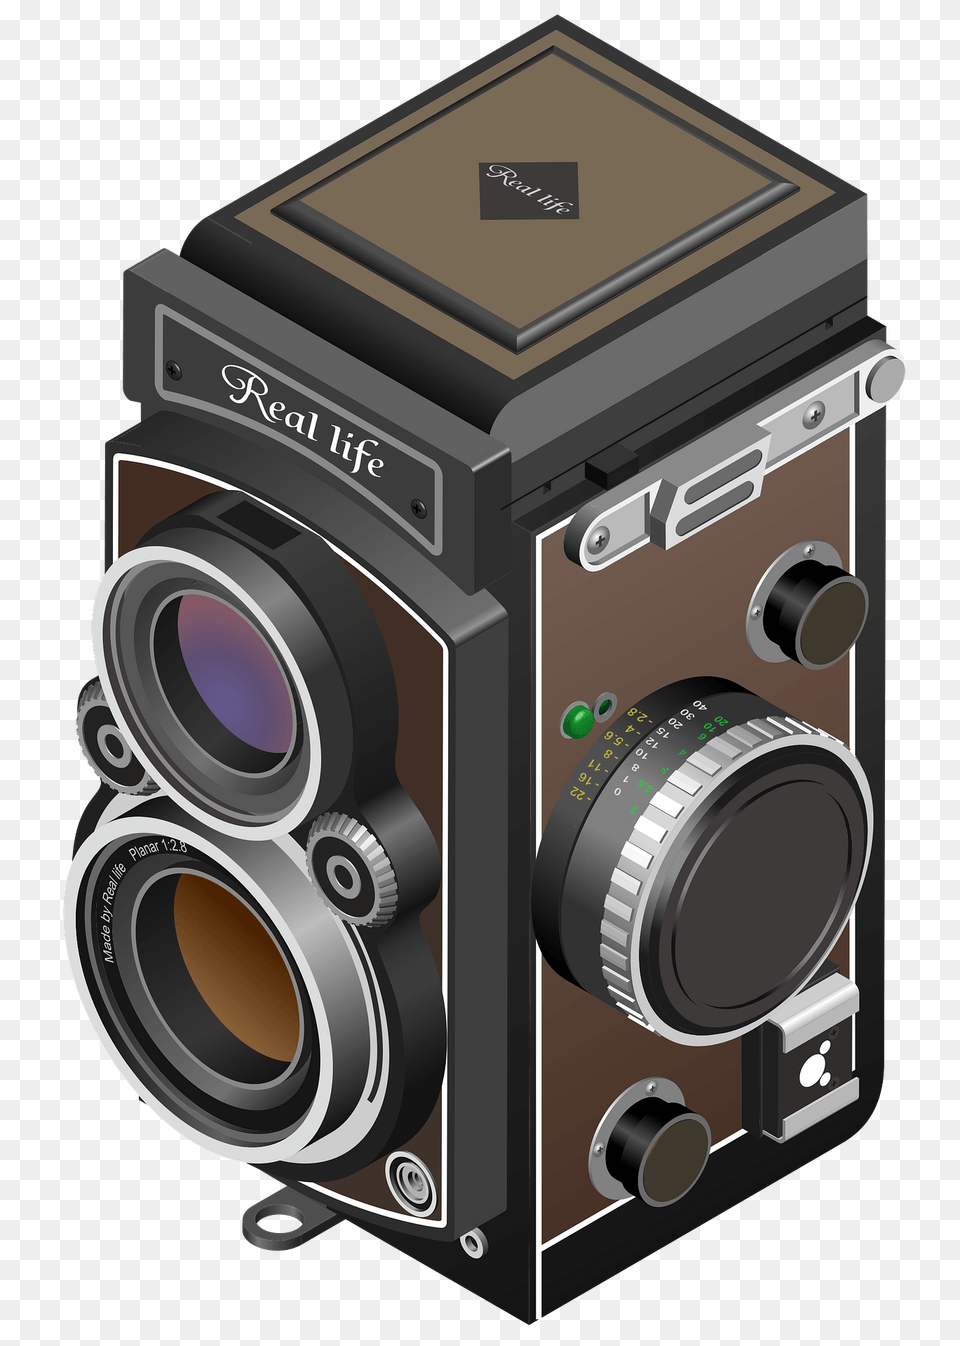 Twin Lens Reflex Camera Clipart, Digital Camera, Electronics Free Transparent Png